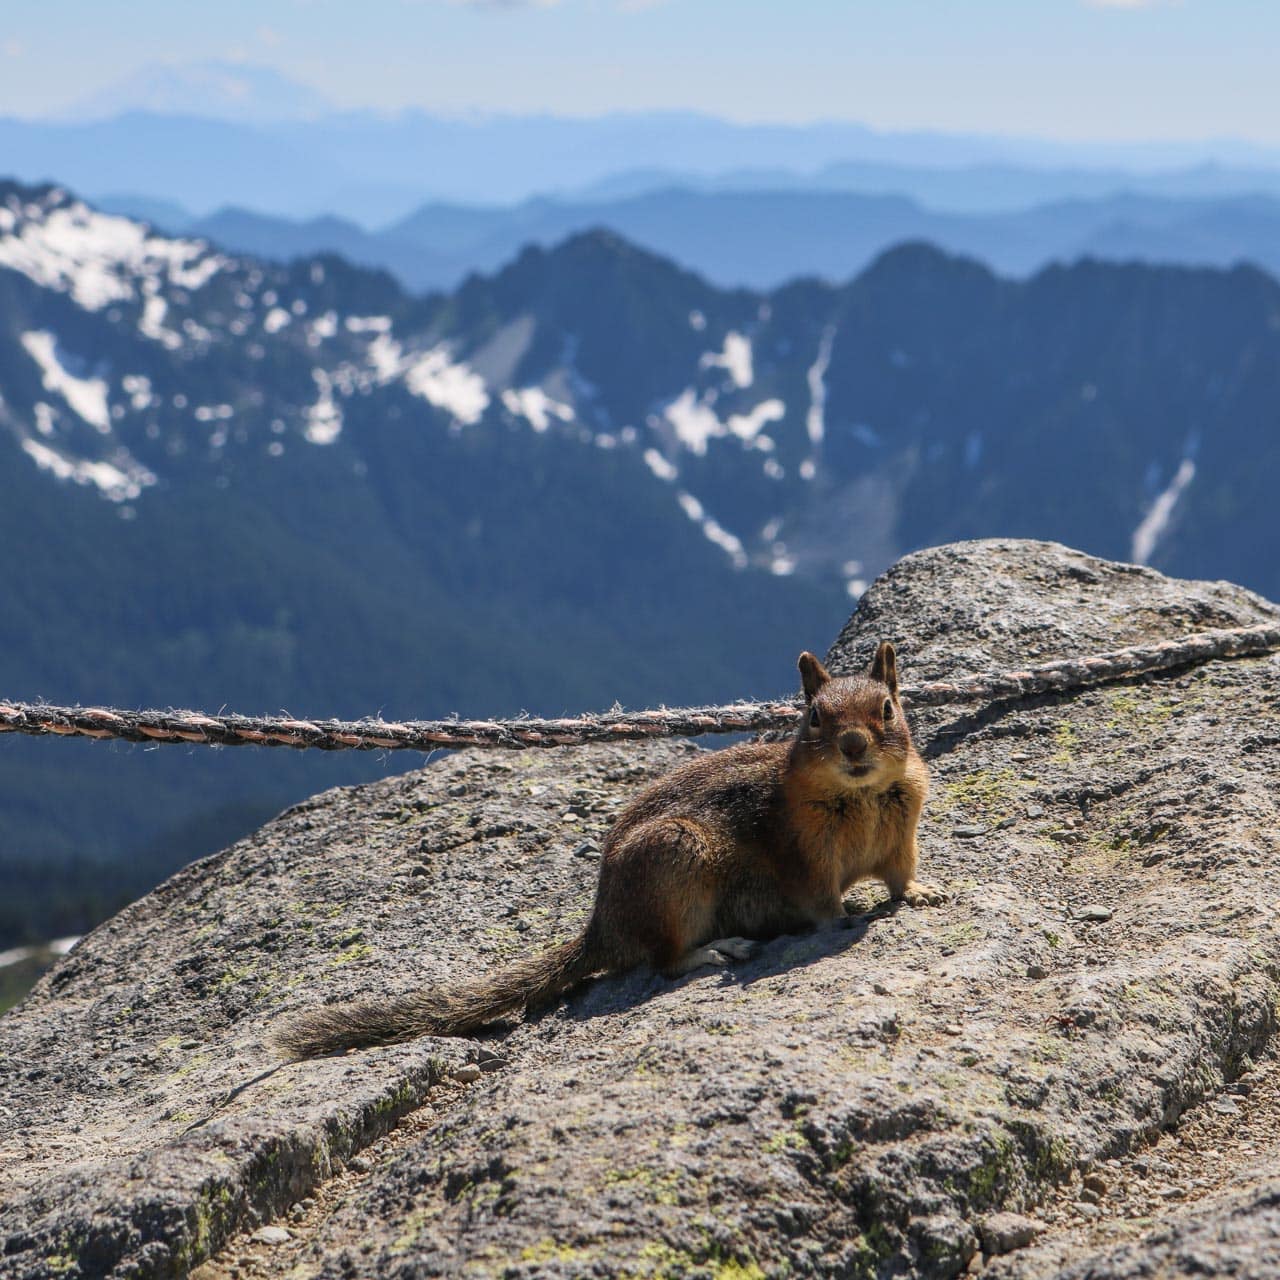 Ground squirrel in Mount Rainier National Park